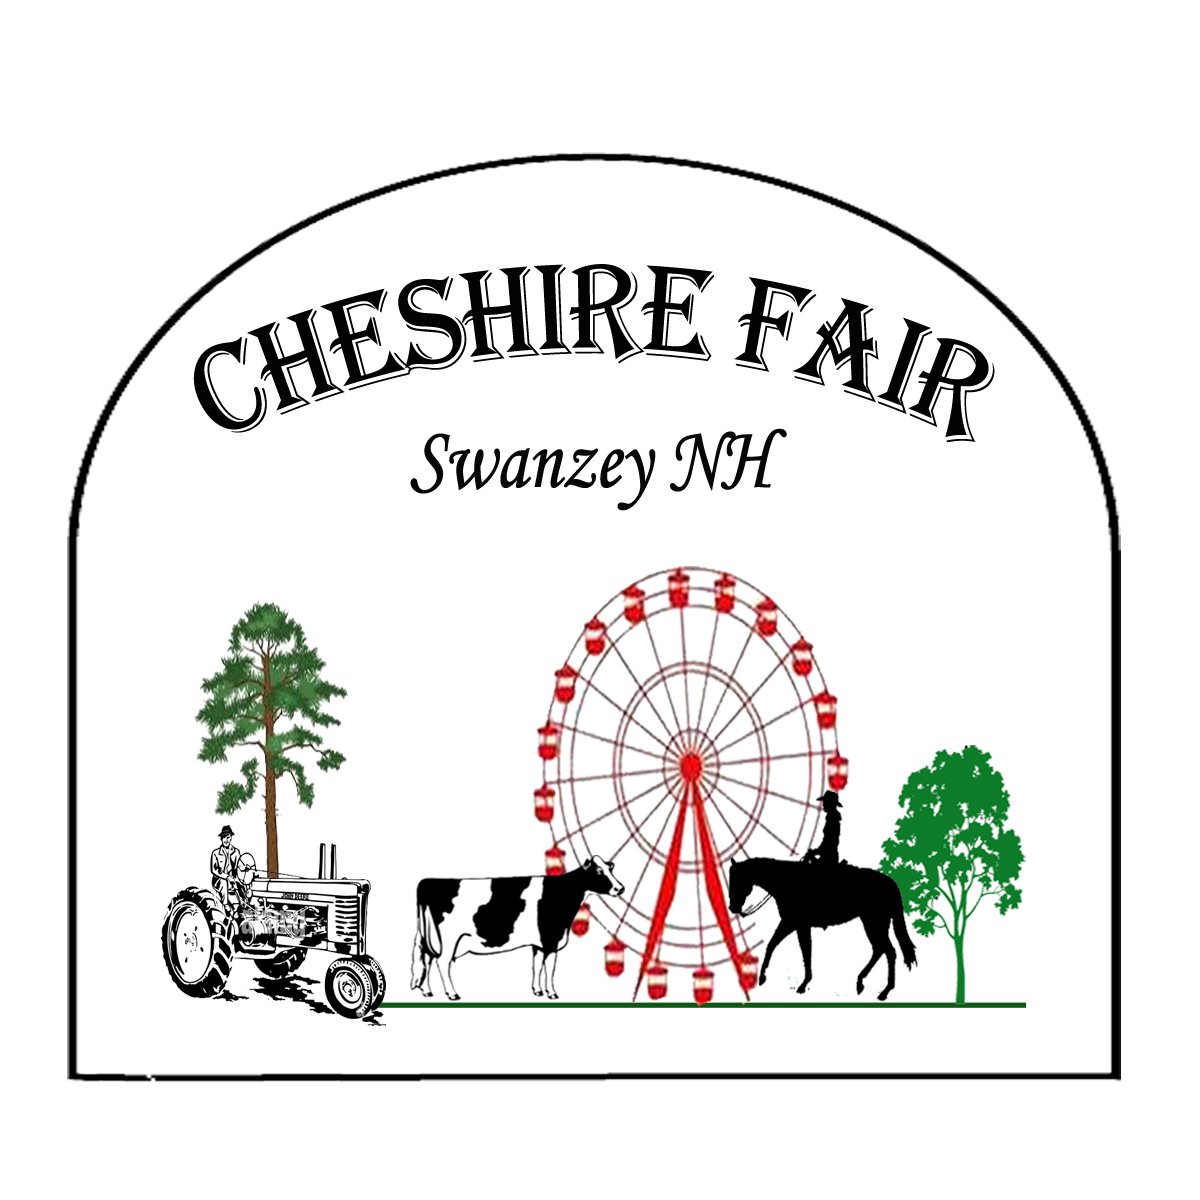 Cheshire Fair